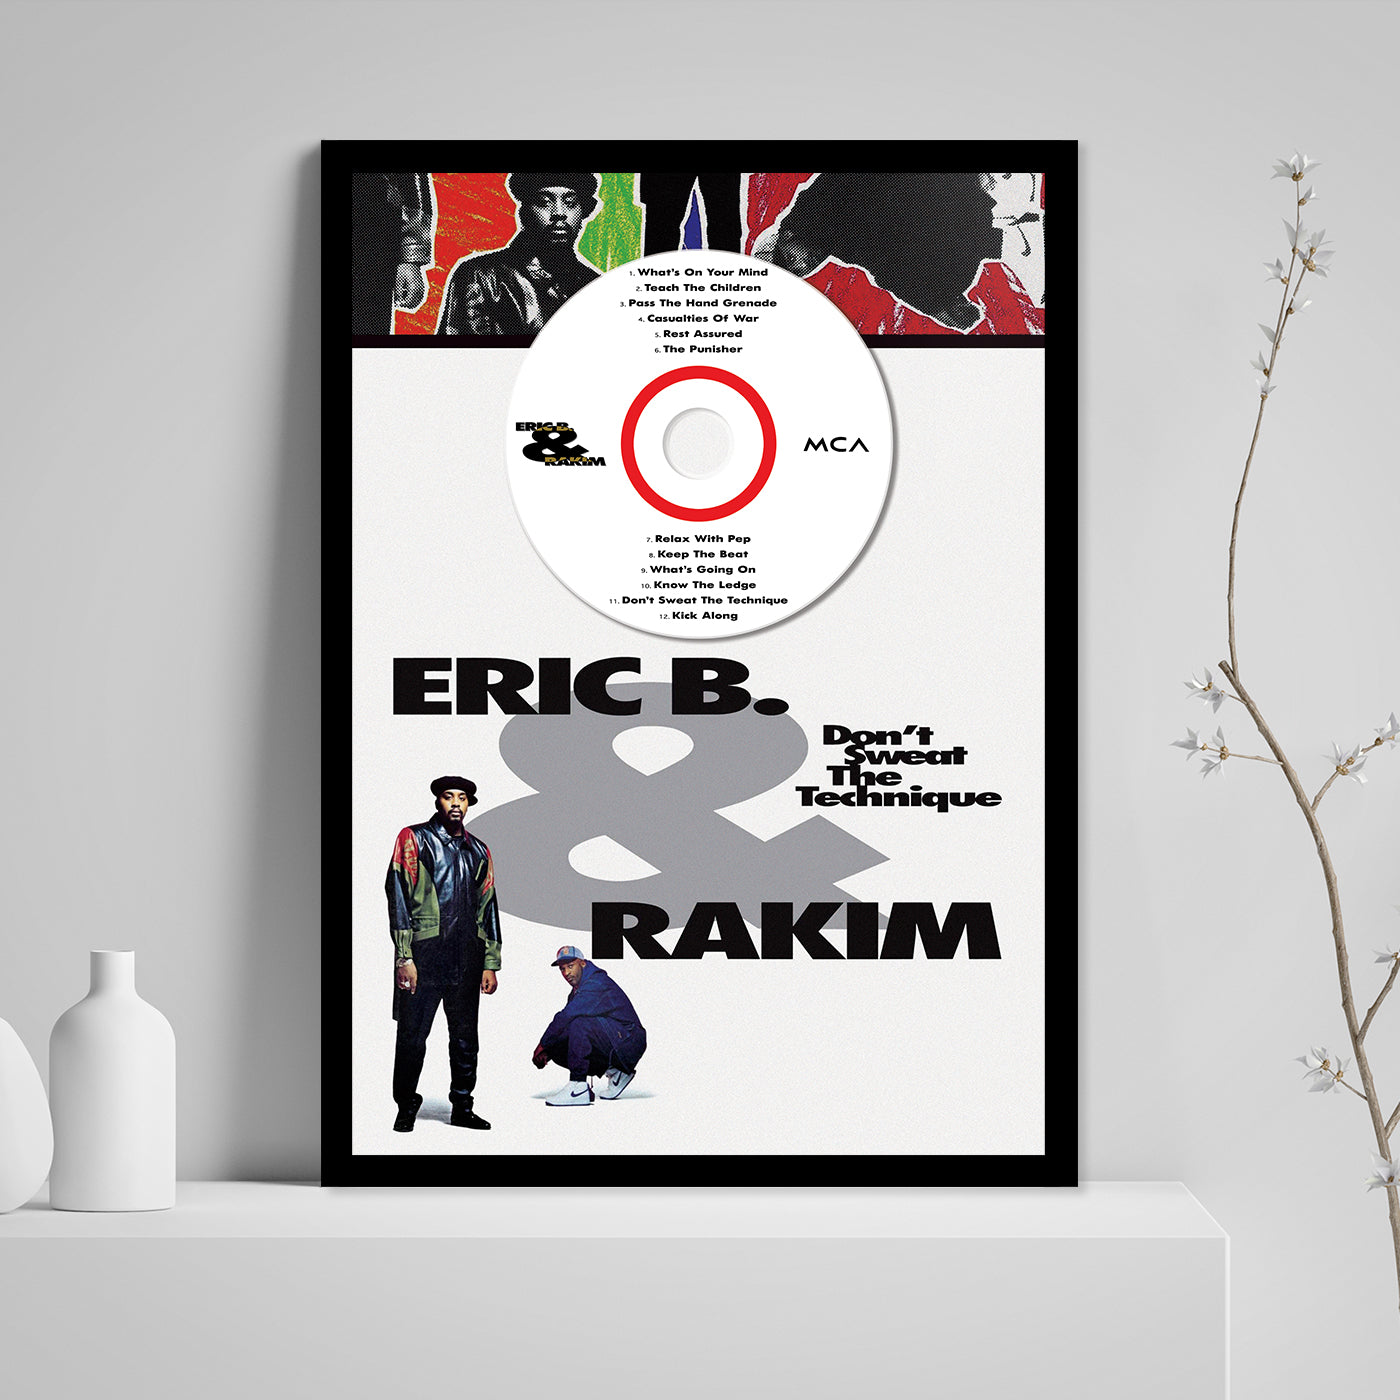 ERIC B. & RAKIM 'DON'T SWEAT THE TECHNIQUE' FRAMED CD ALBUM PLAQUE